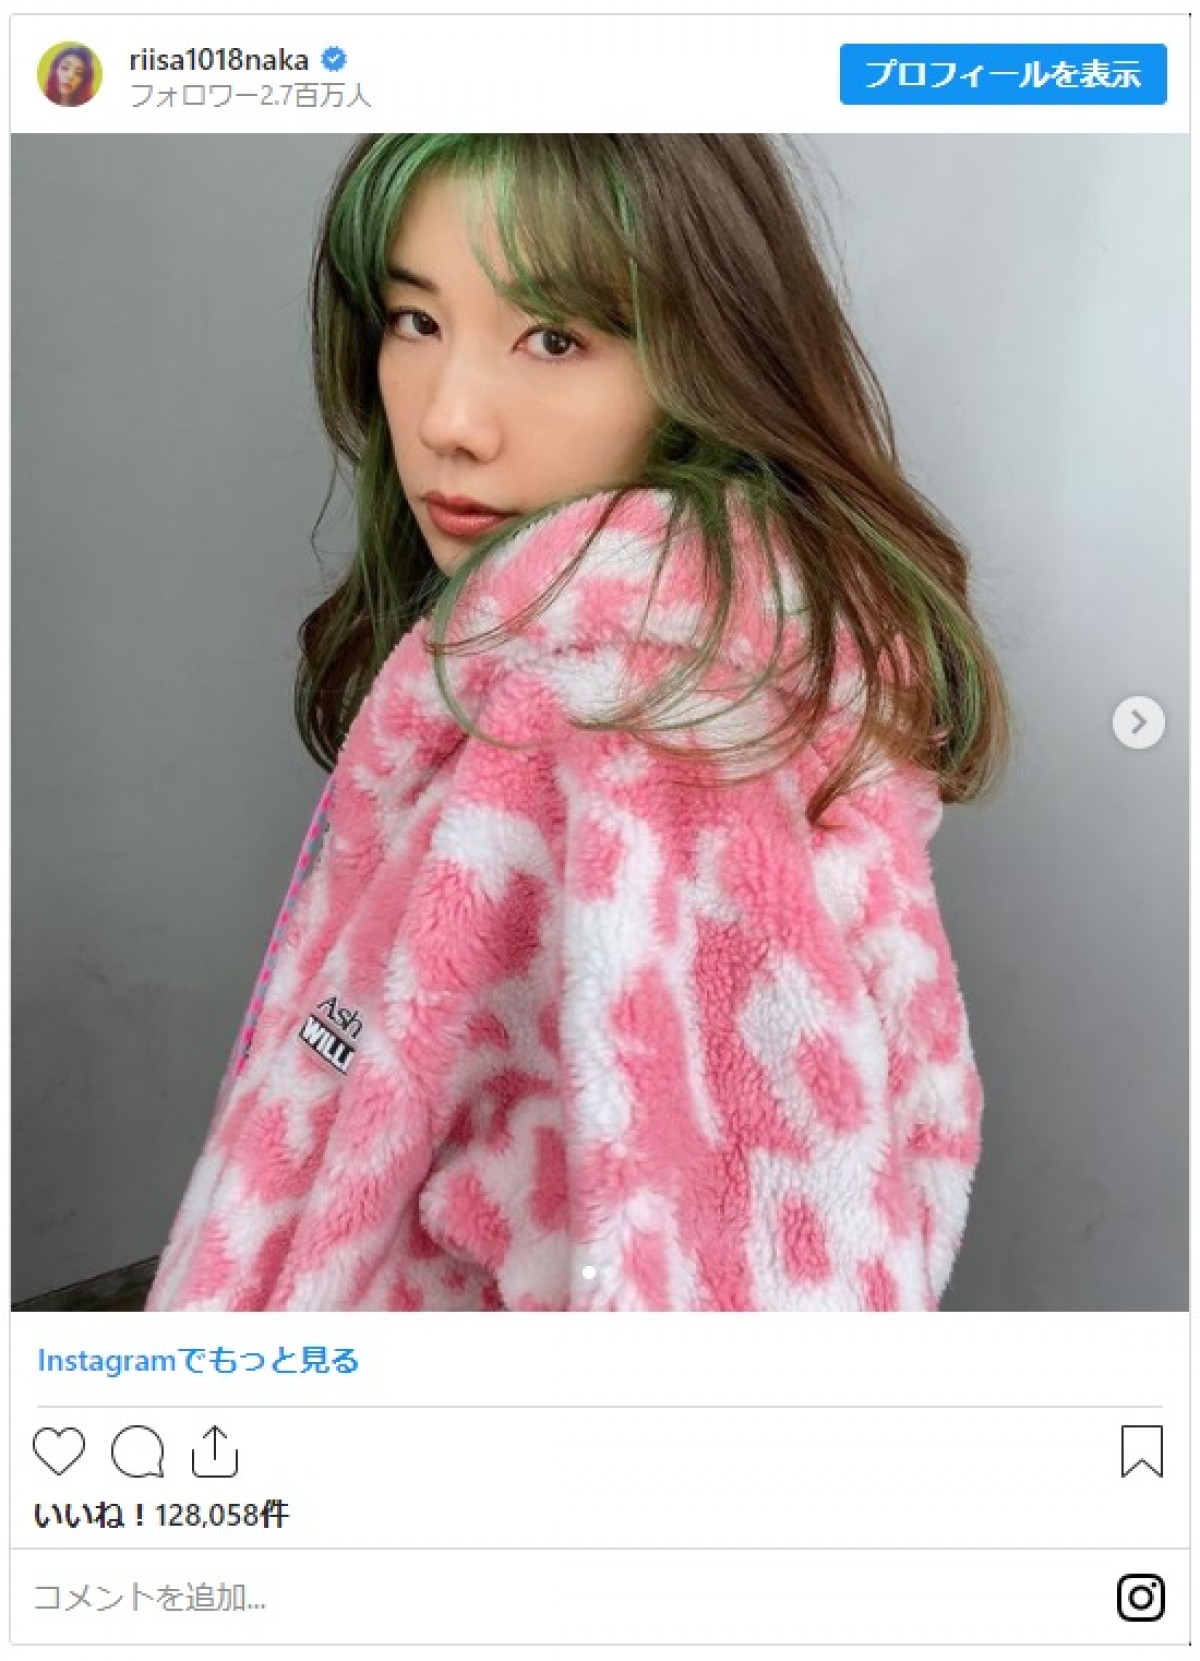 仲里依紗、緑のインナーカラーヘアにイメチェン 「かわいい」「似合いすぎです」